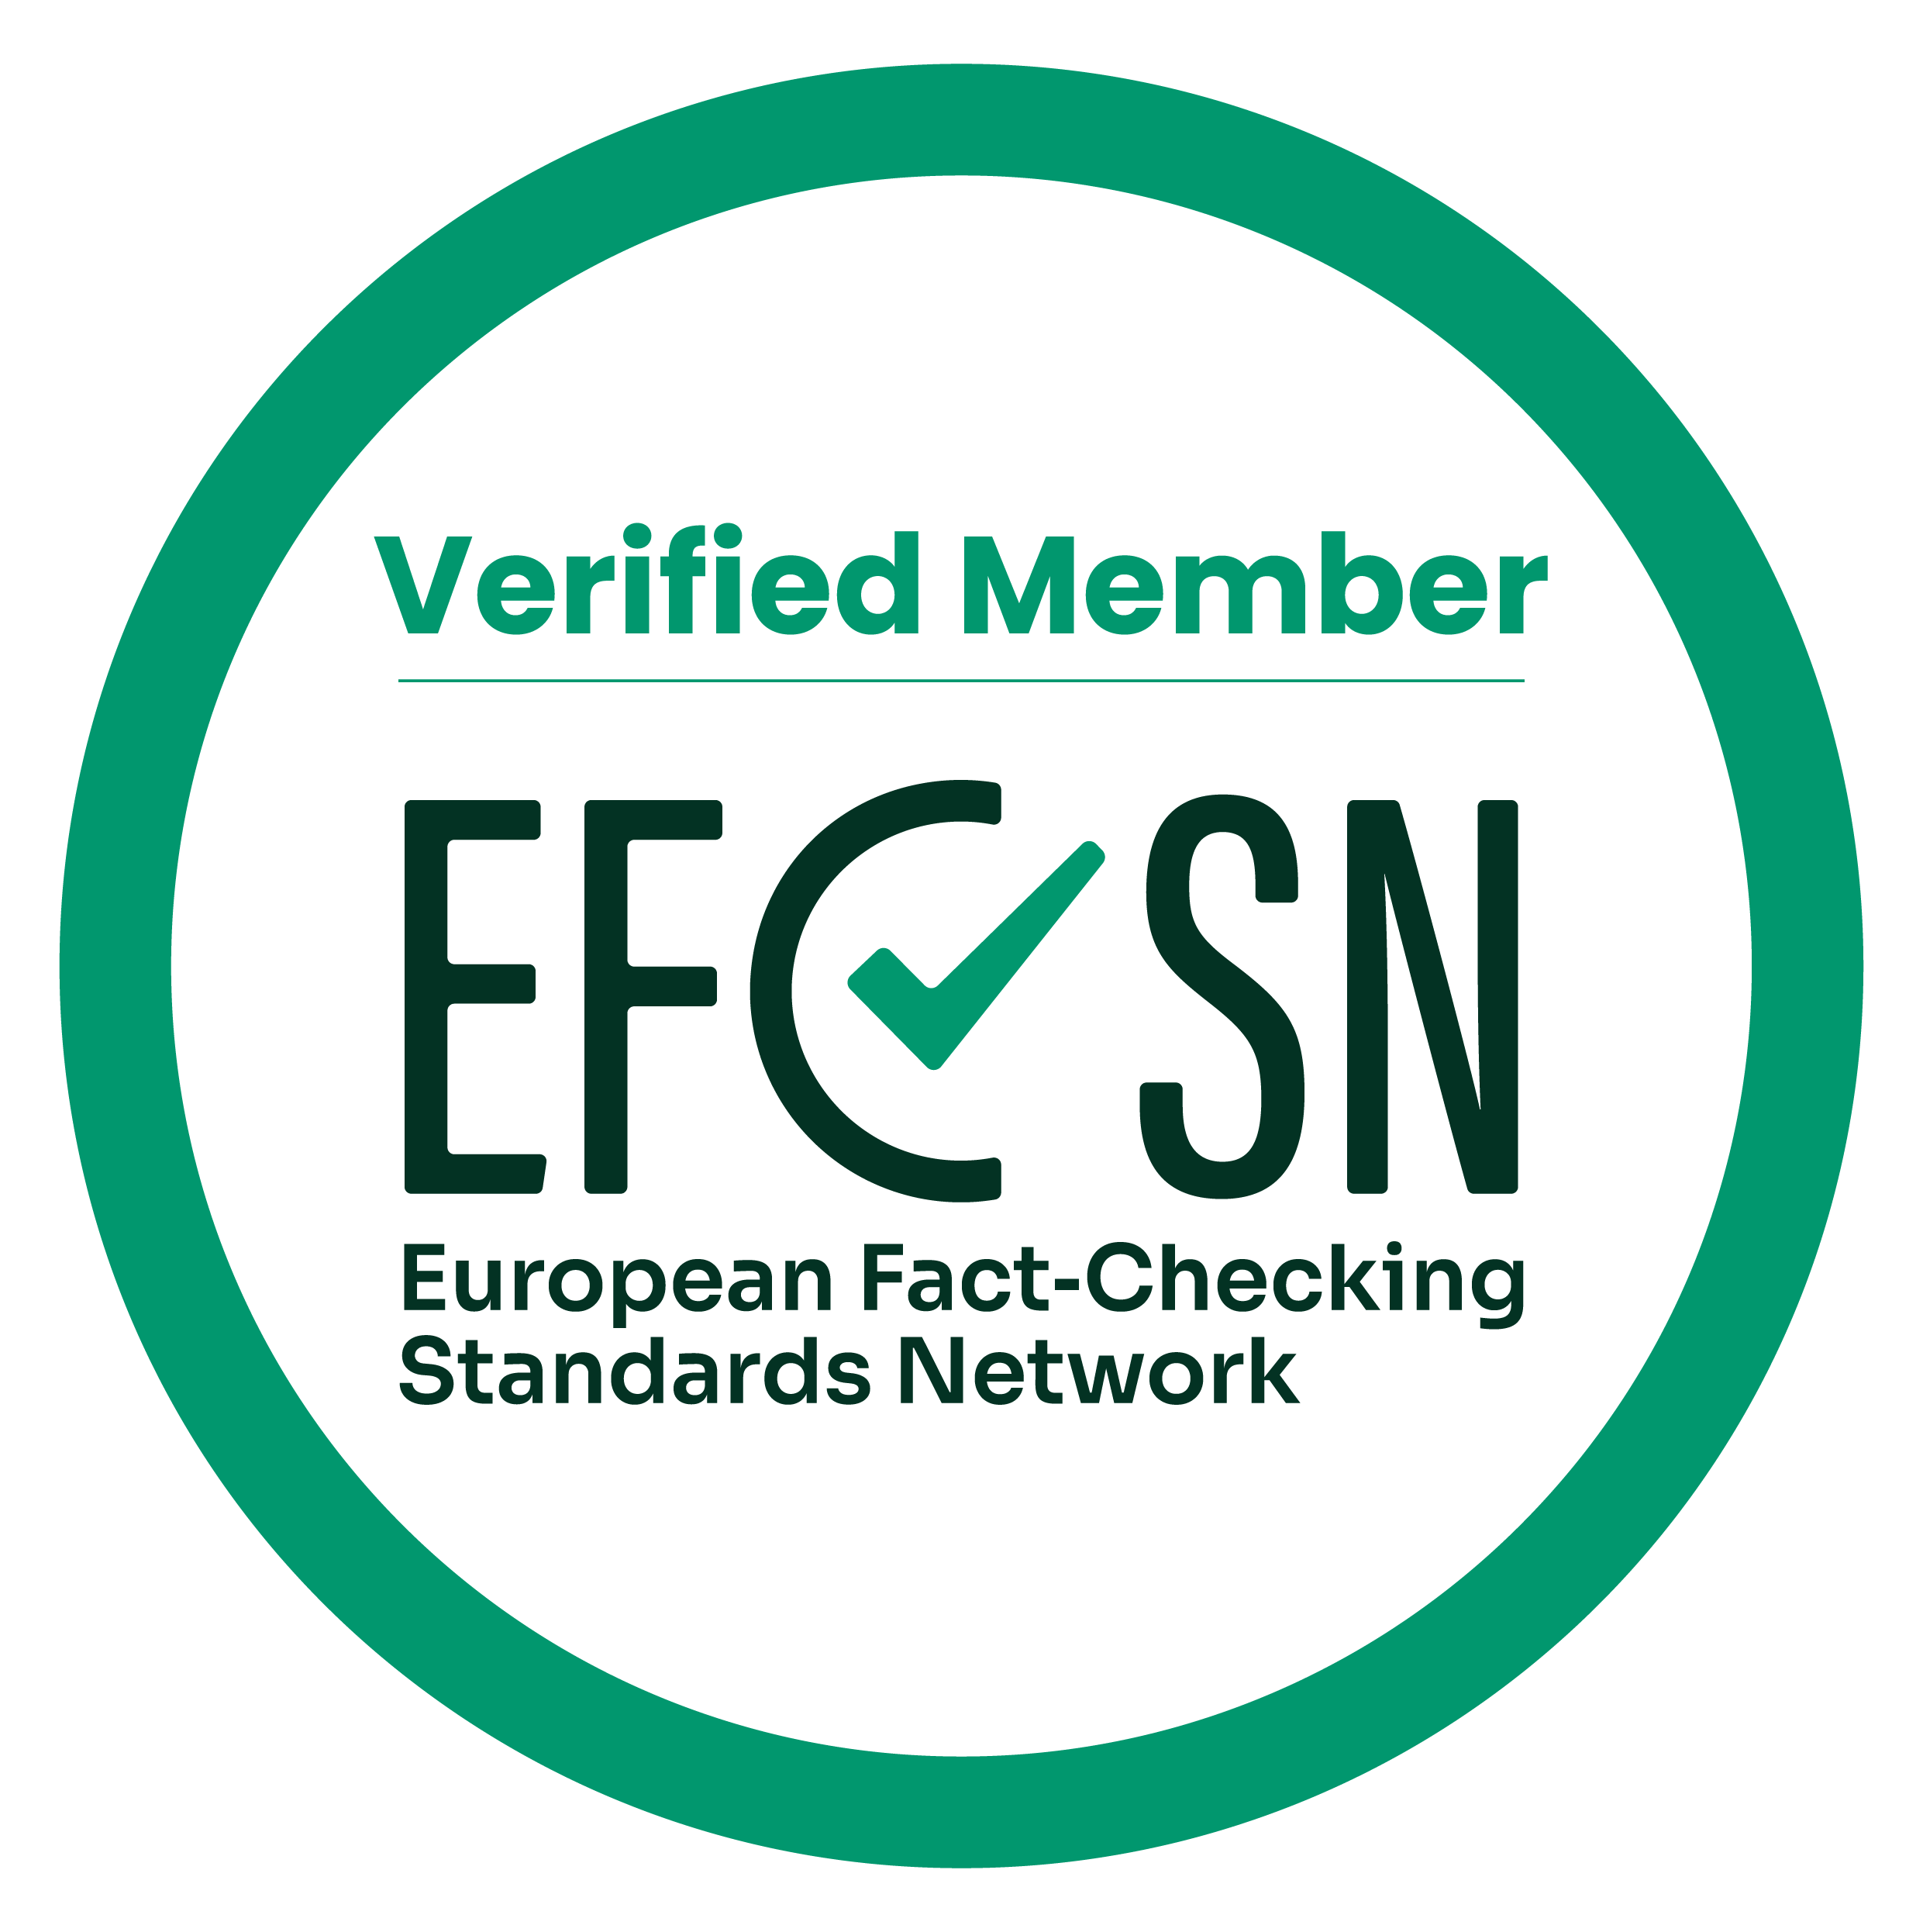 EFCSN certificate